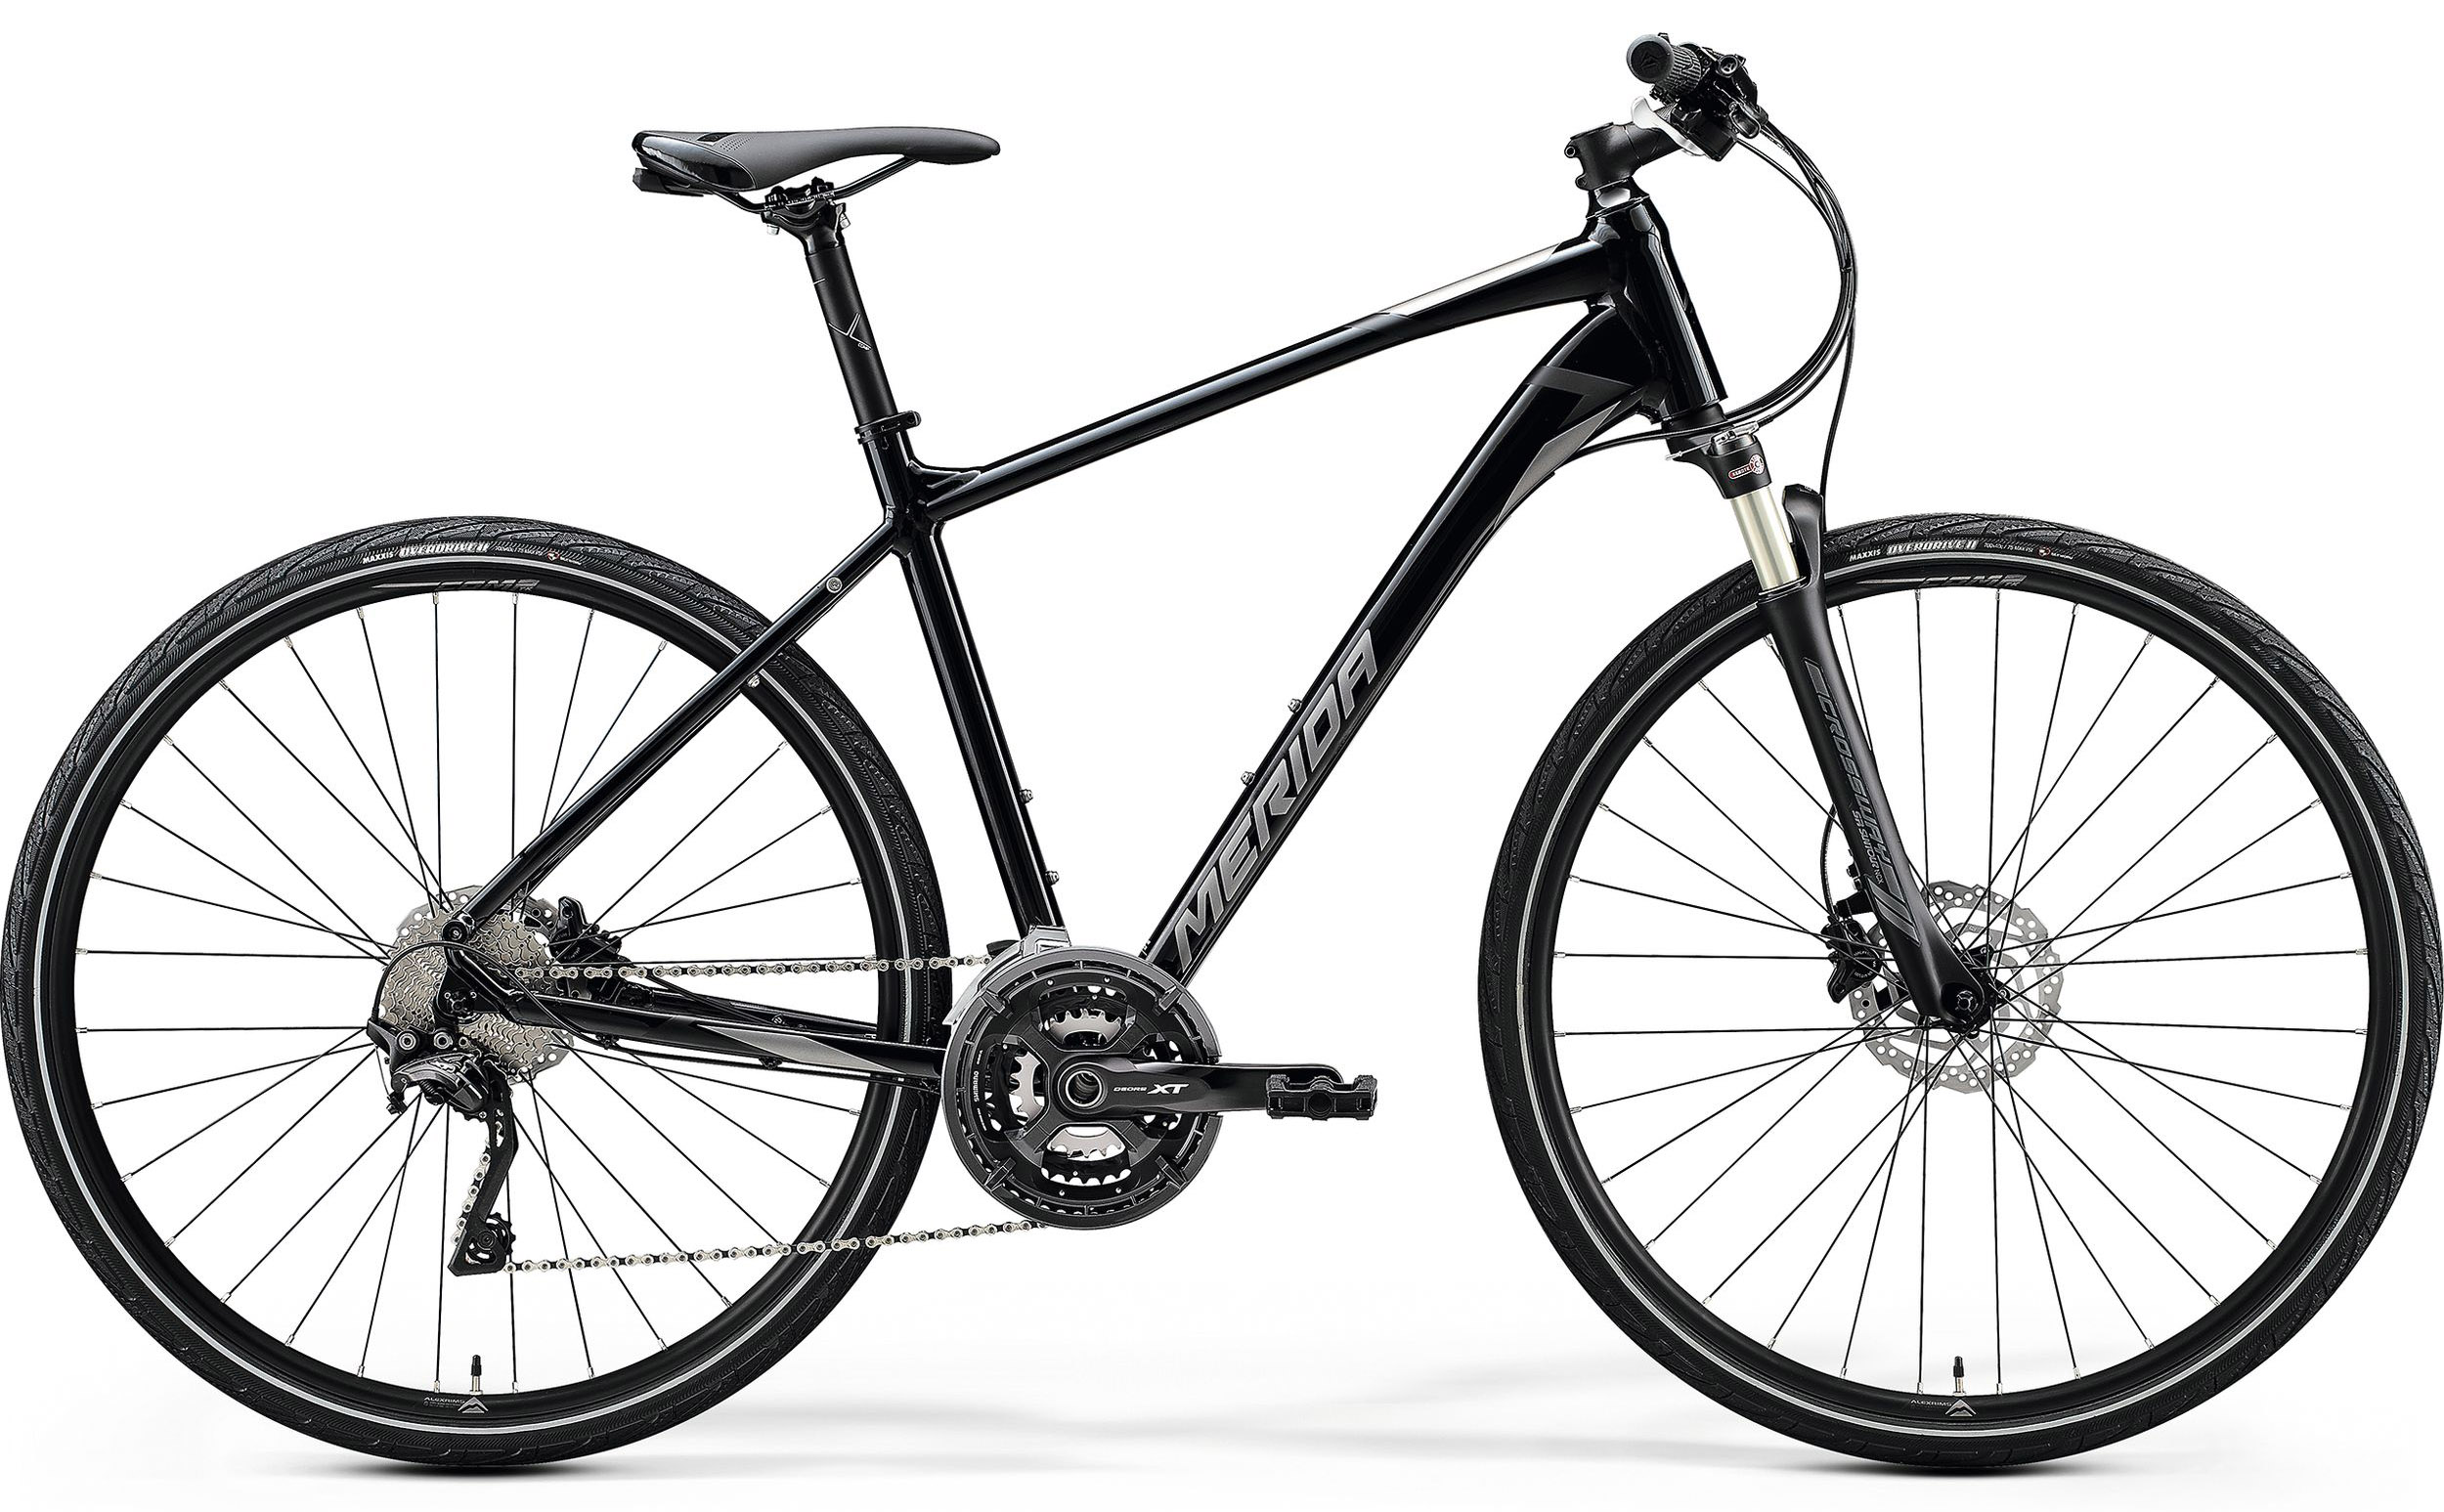  Велосипед Merida Crossway XT Edition 2020